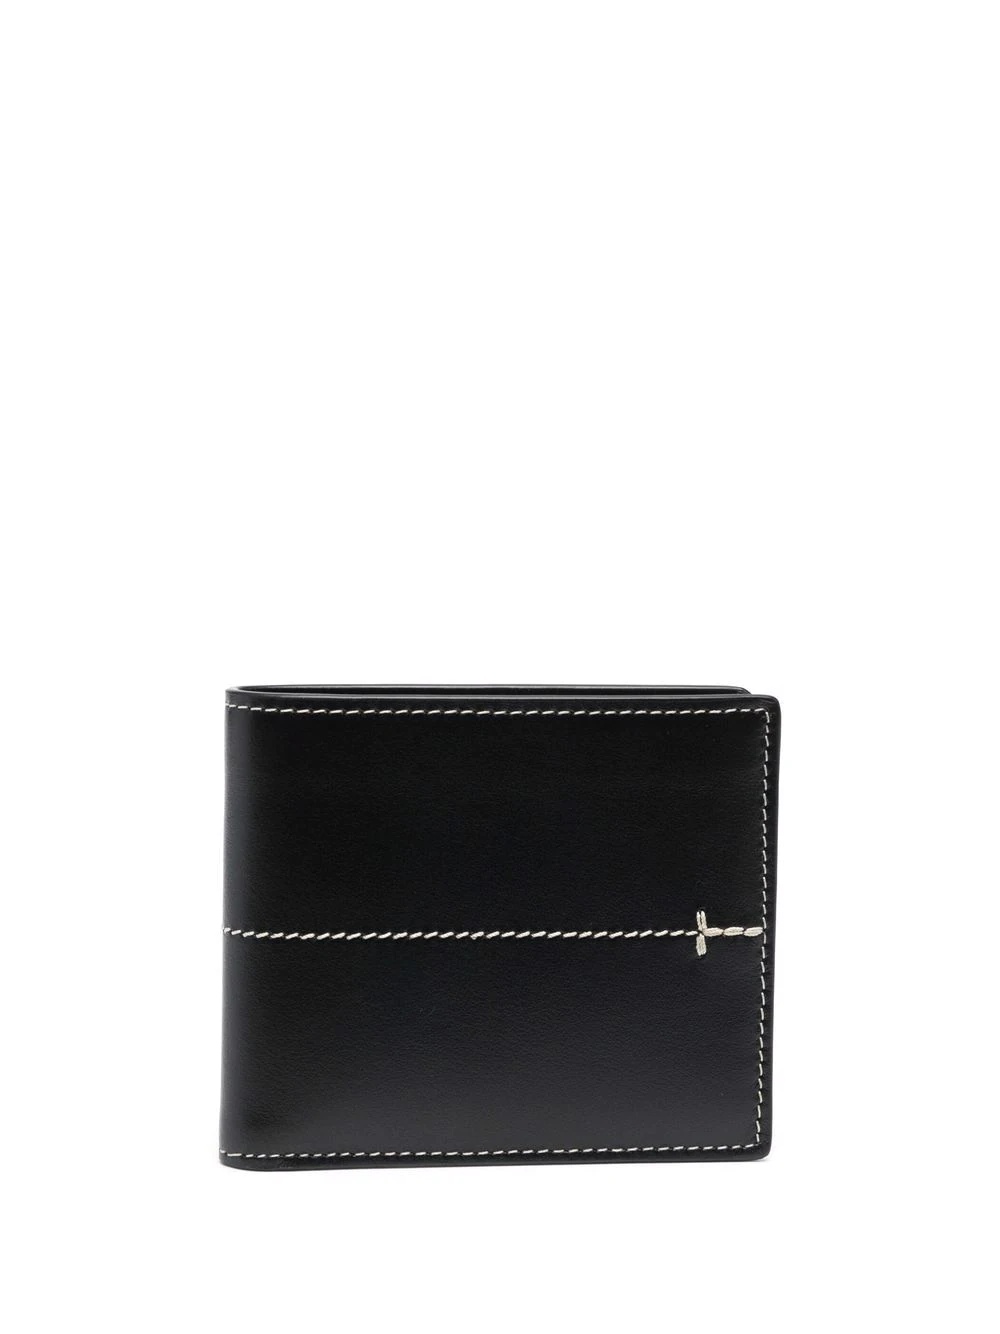 leather bi-fold wallet - 1